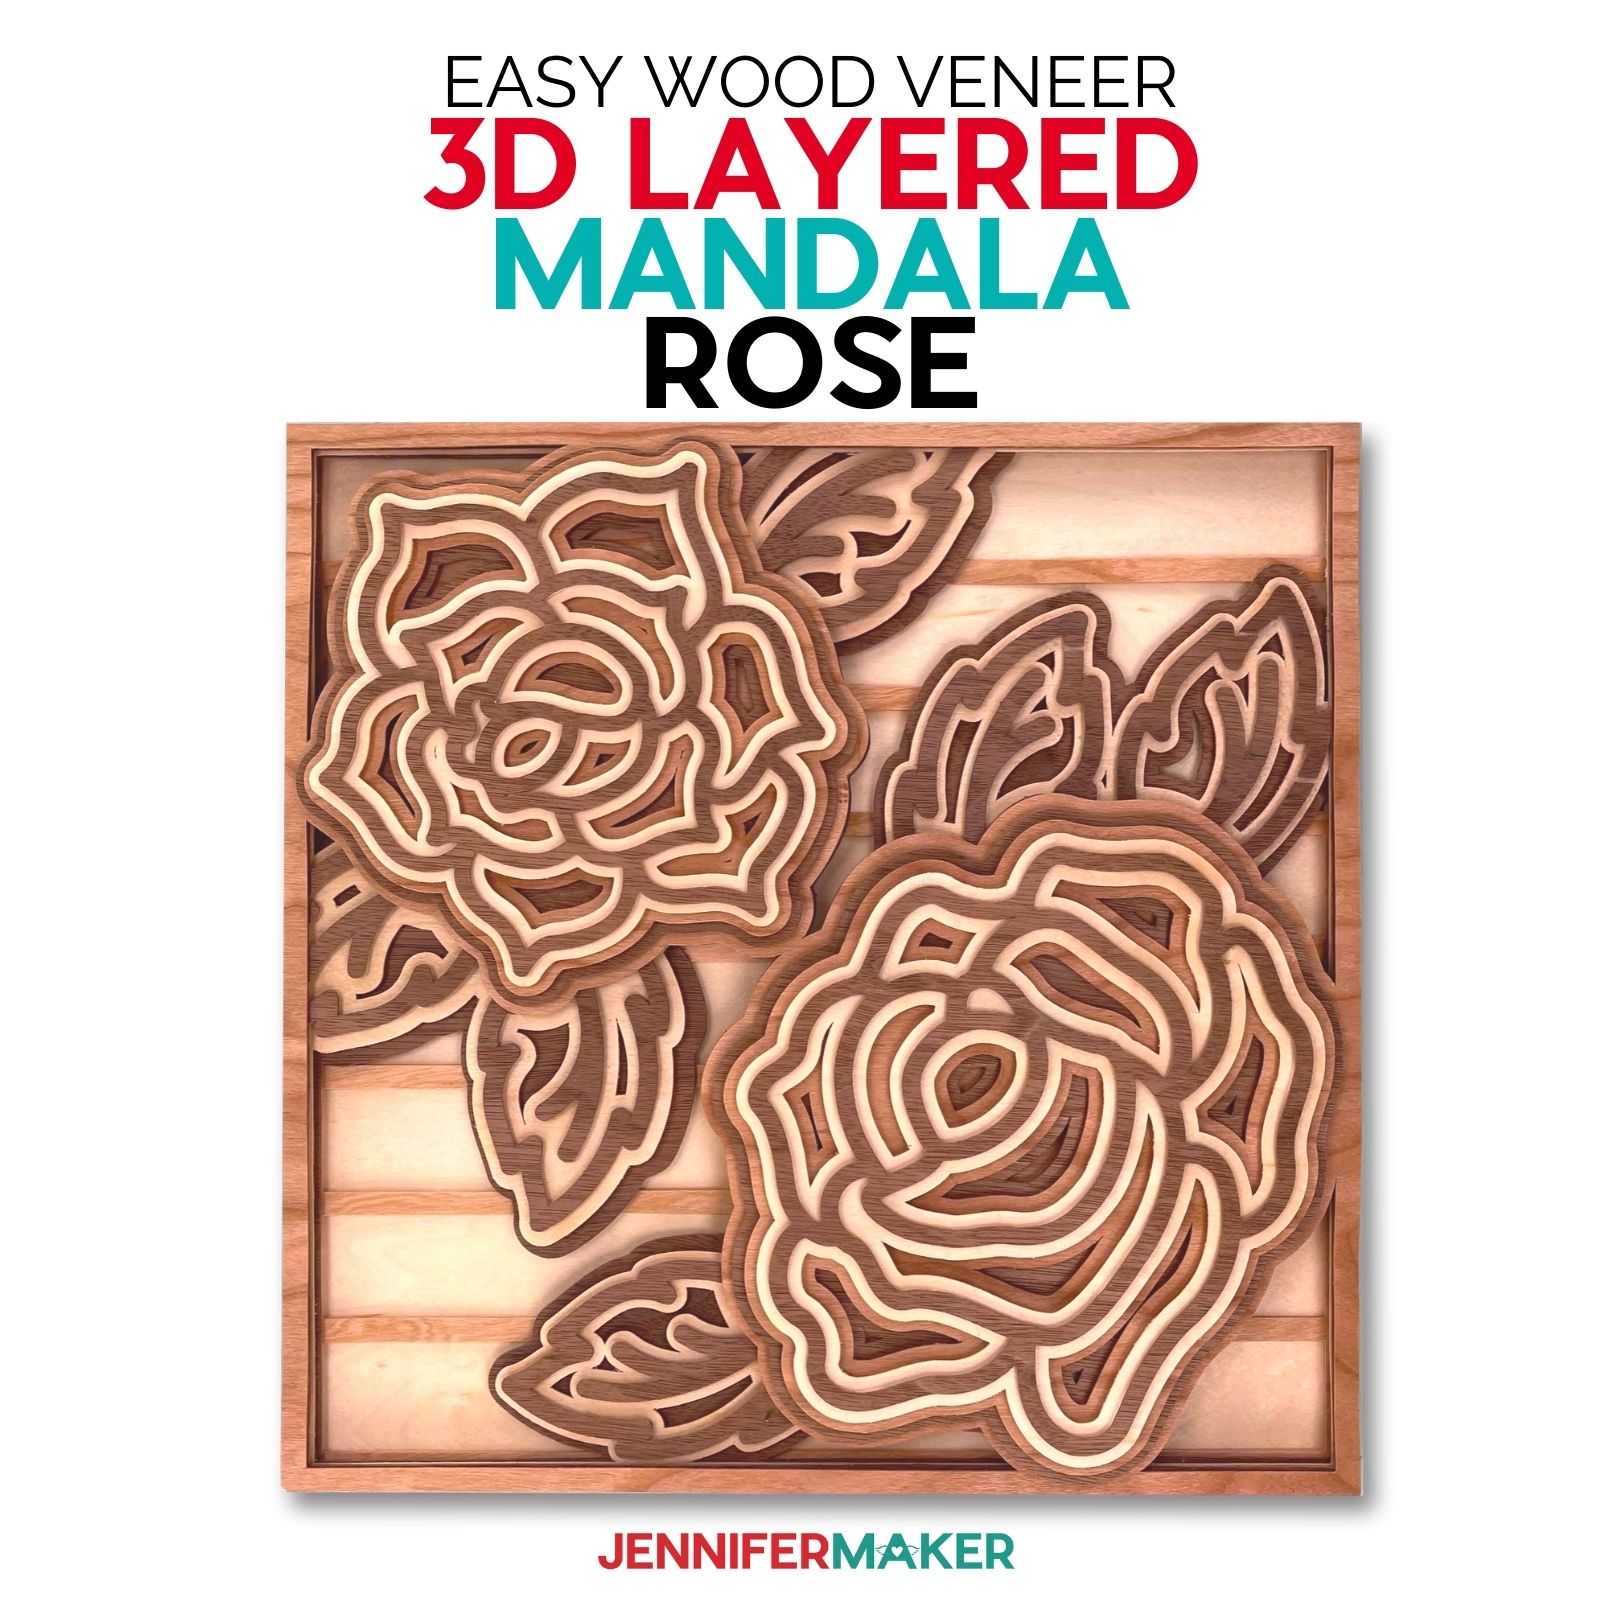 Layered Mandala Rose 3D: Cardstock or Wood Veneer Layers!